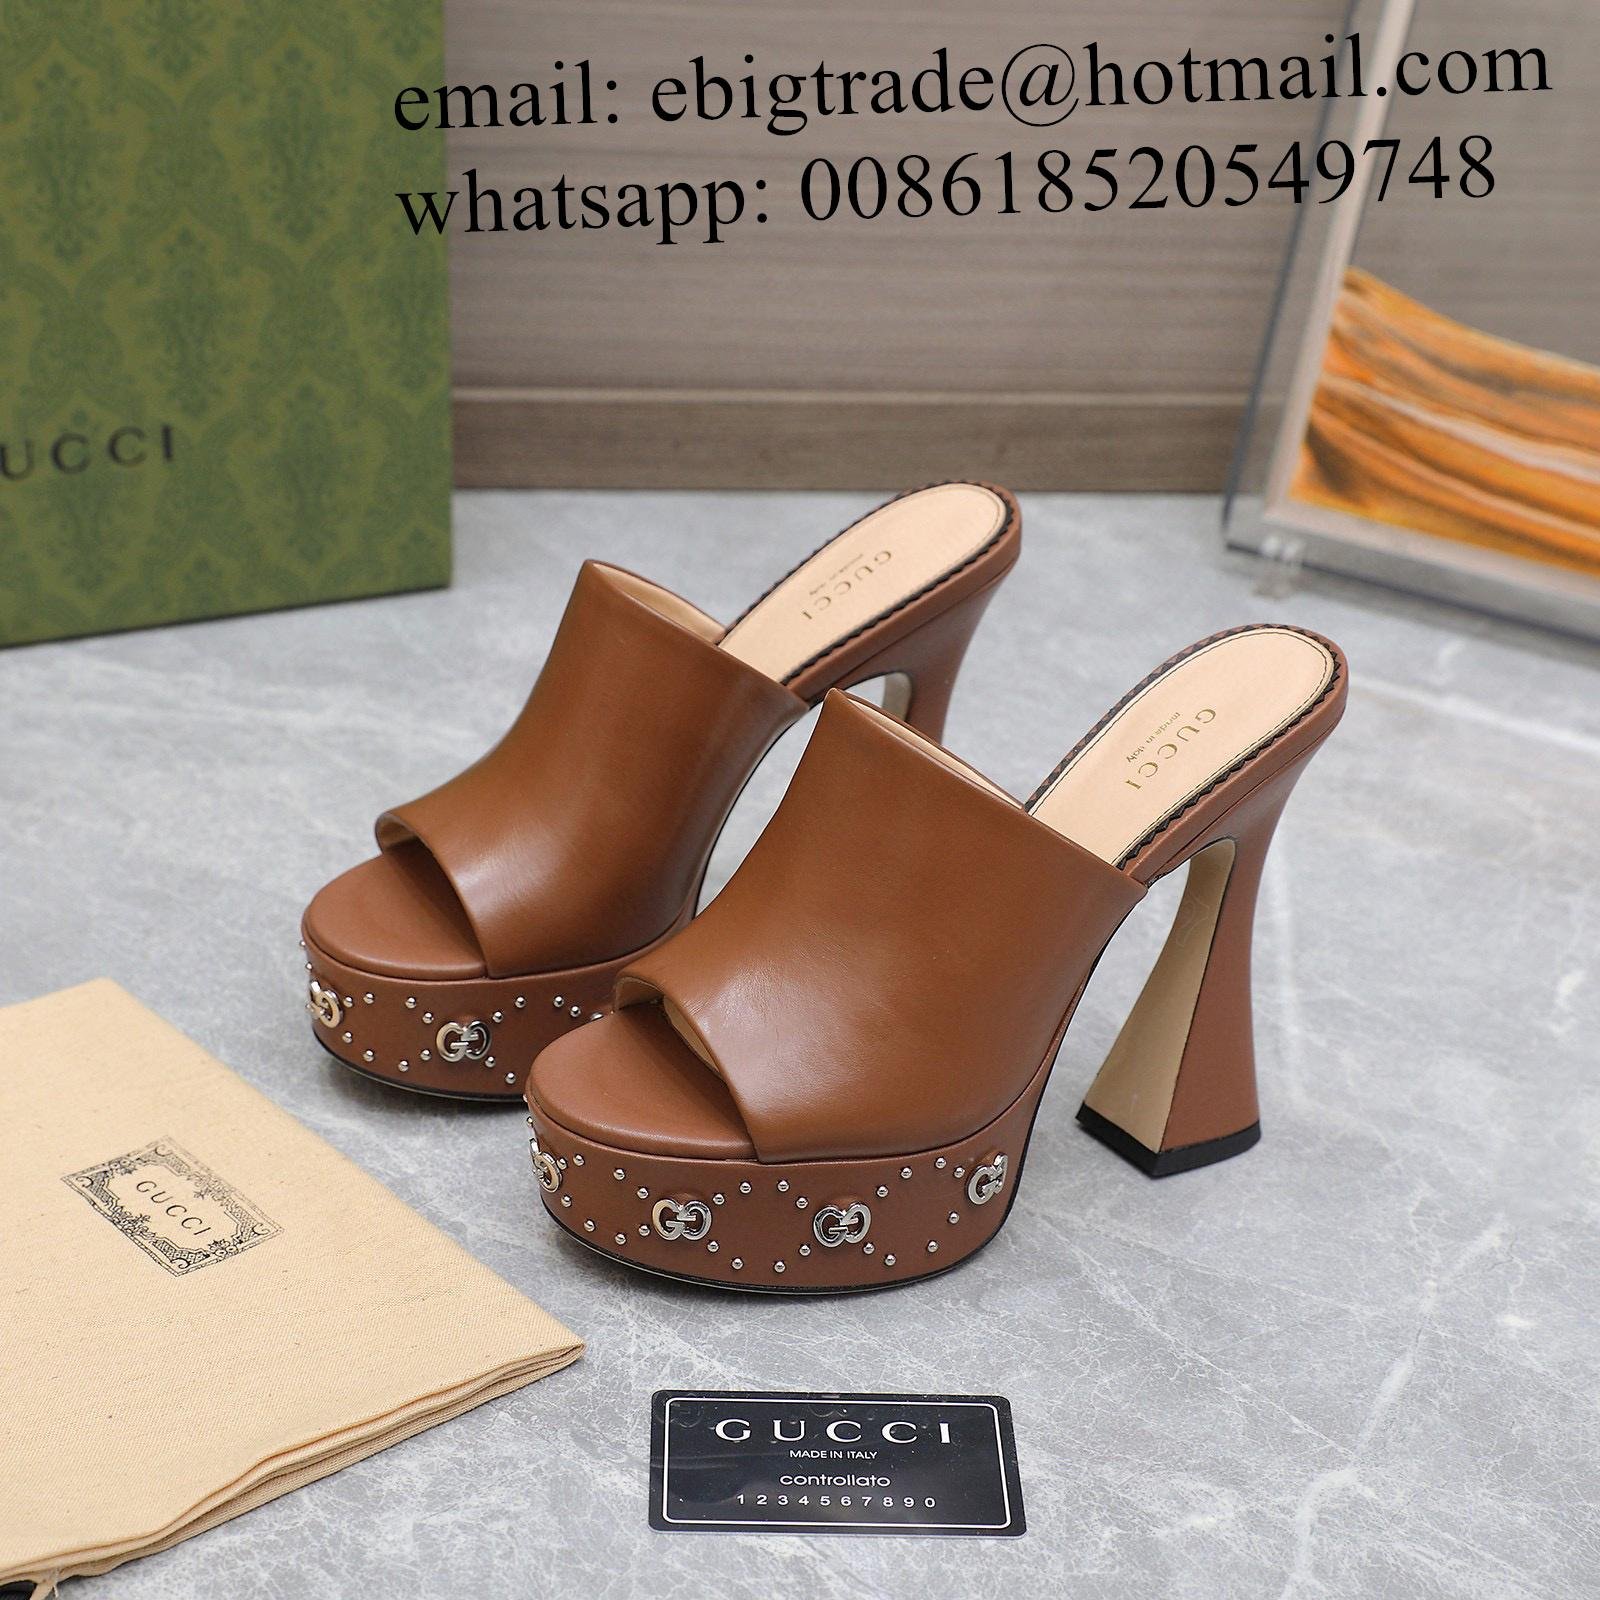 Cheap       women's Platform Sandals       leather Sandals Slides       Mules 5